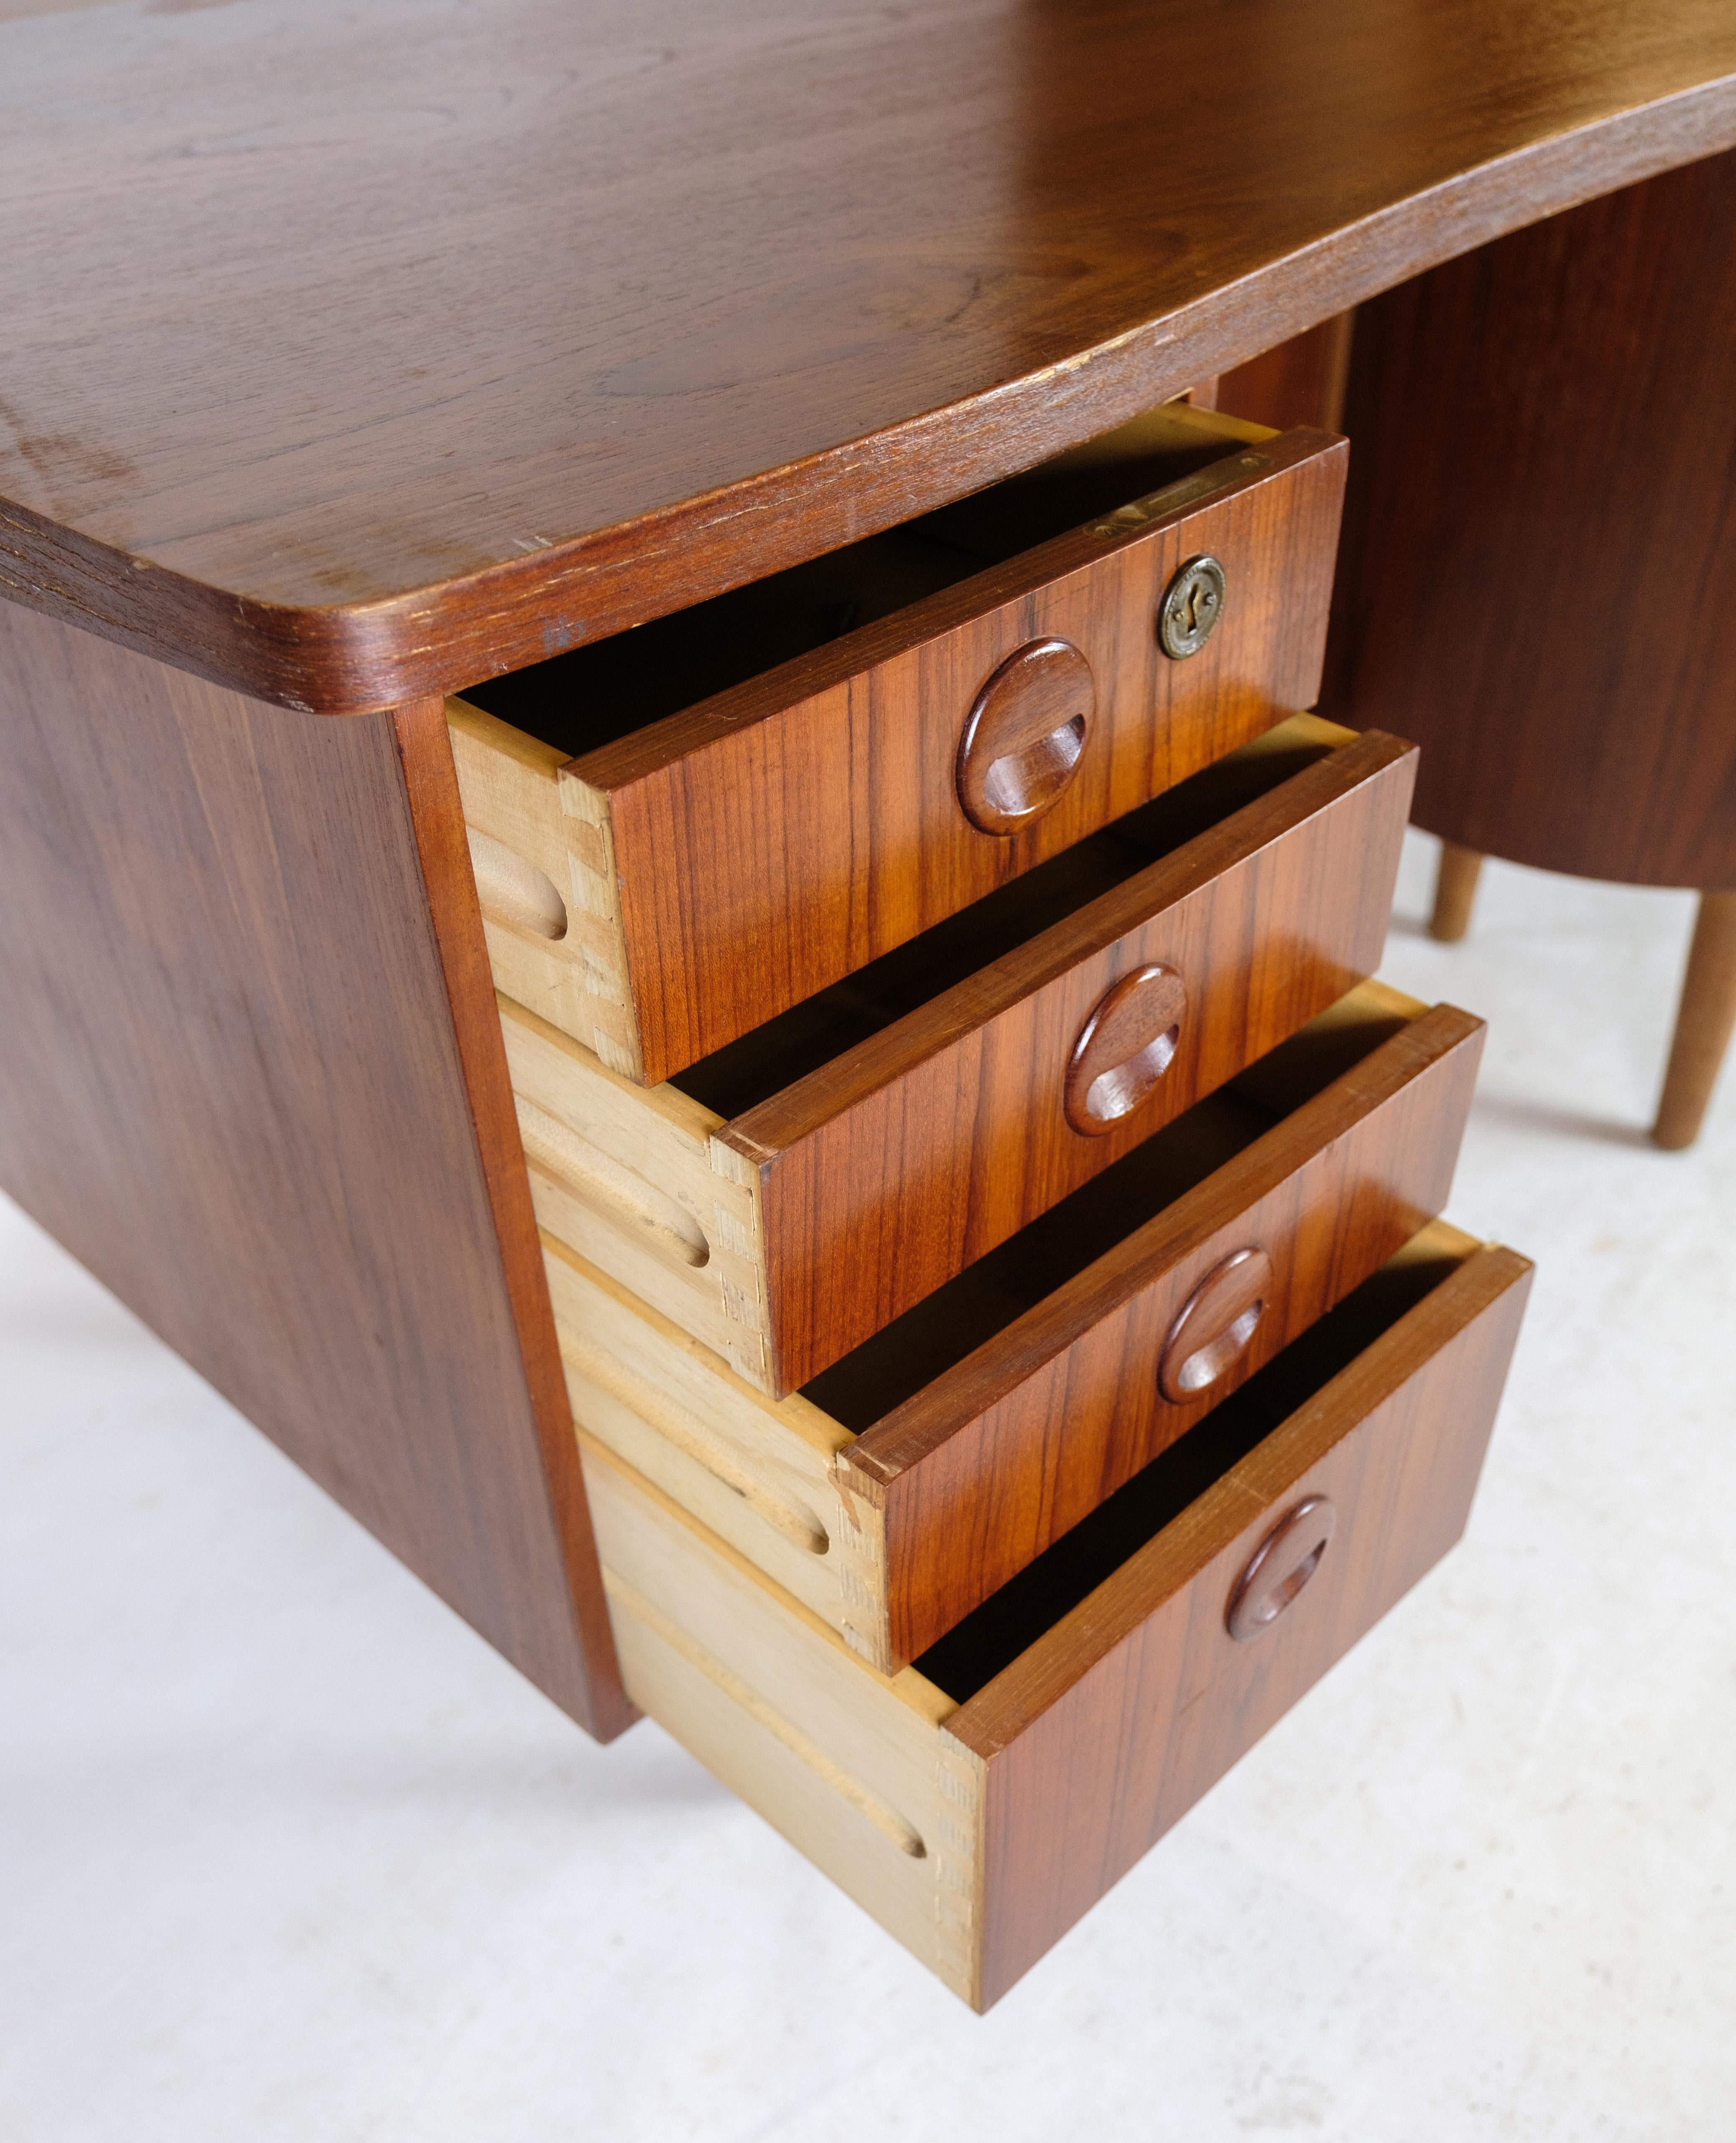 Scandinavian Modern Desk in Teak wood model 54 by Kai Kristiansen and Feldballes furniture from 1954 For Sale